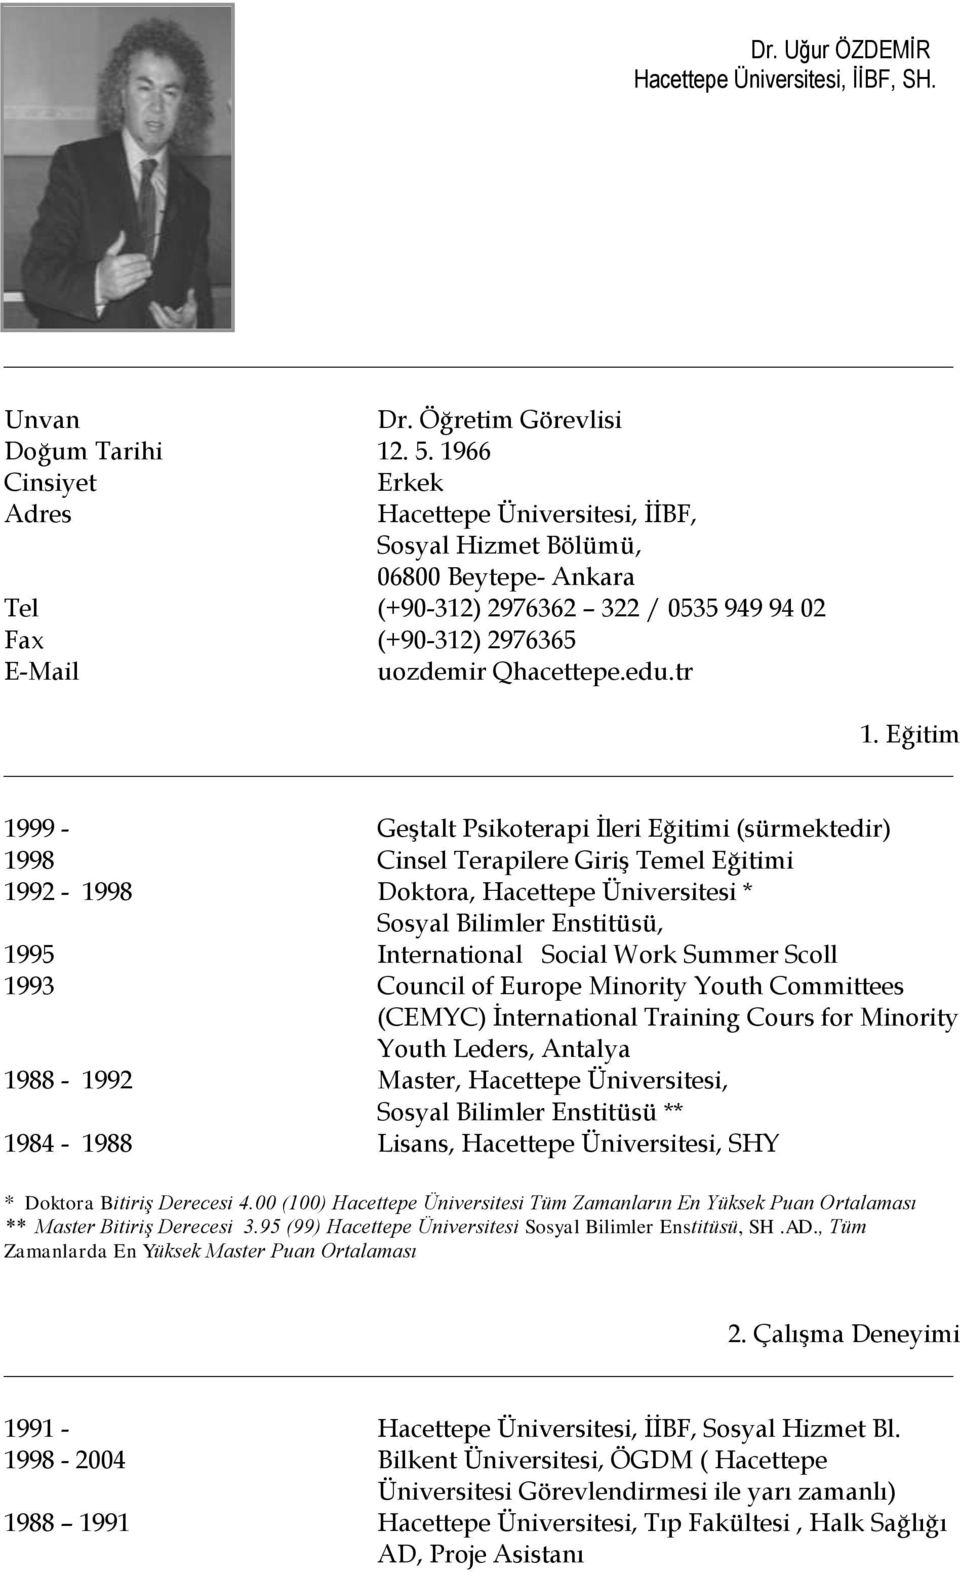 tr 1. Eğitim 1999 - Geştalt Psikoterapi İleri Eğitimi (sürmektedir) 1998 Cinsel Terapilere Giriş Temel Eğitimi 1992-1998 Doktora, Hacettepe Üniversitesi * Sosyal Bilimler Enstitüsü, 1995